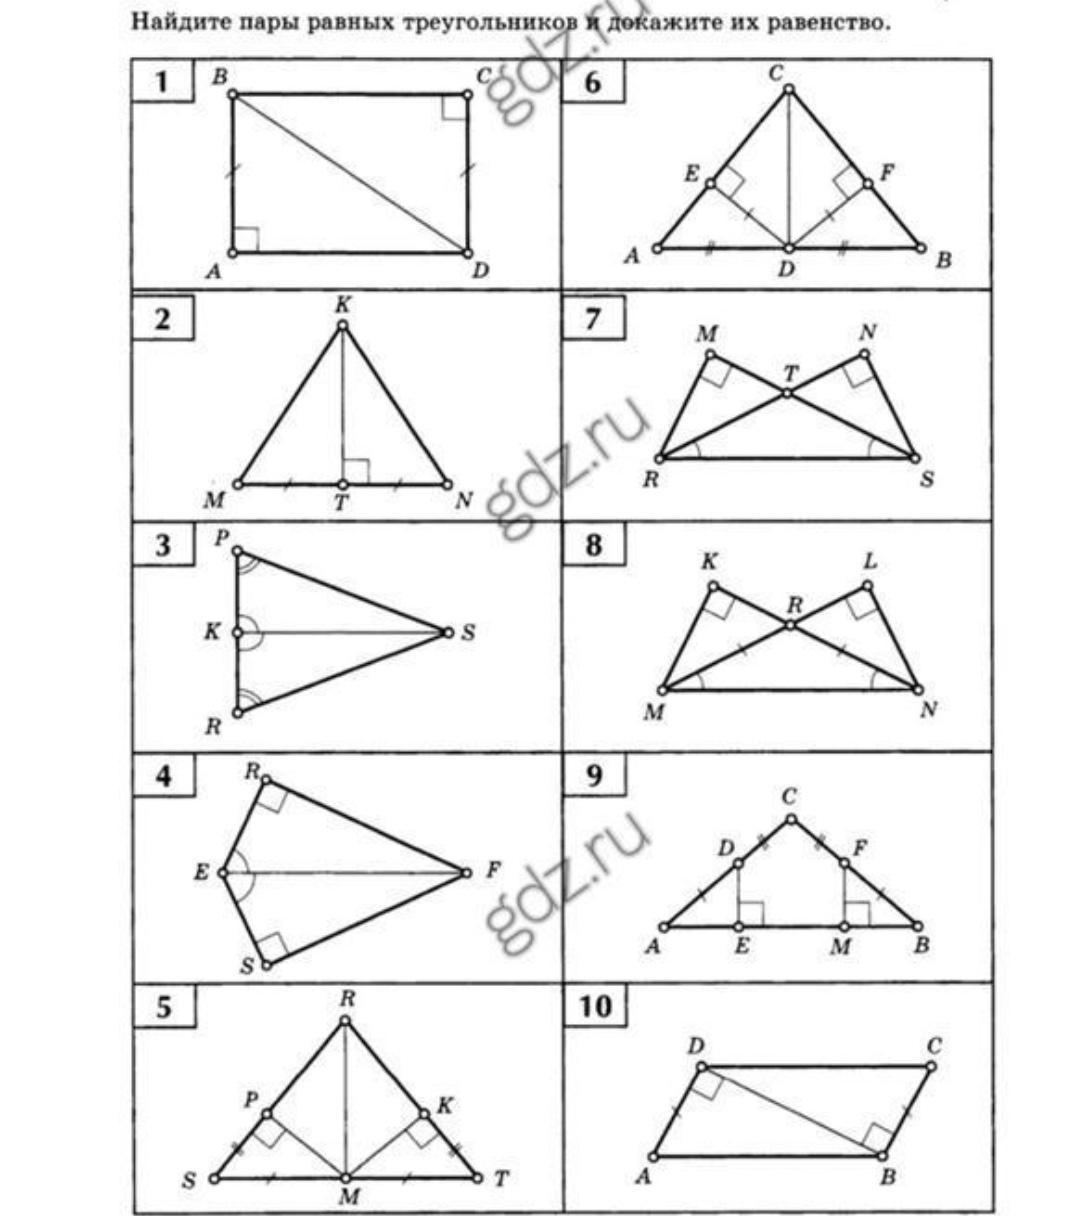 Геометрия задачи на равенство прямоугольных треугольников. Задачи на признаки равенства прямоугольных треугольников 7 класс. Задания по признакам равенства прямоугольных треугольников 7 класс. Равенство прямоугольных треугольников задачи по готовым чертежам. Задания на признаки равенства прямоугольных треугольников 7 класс.